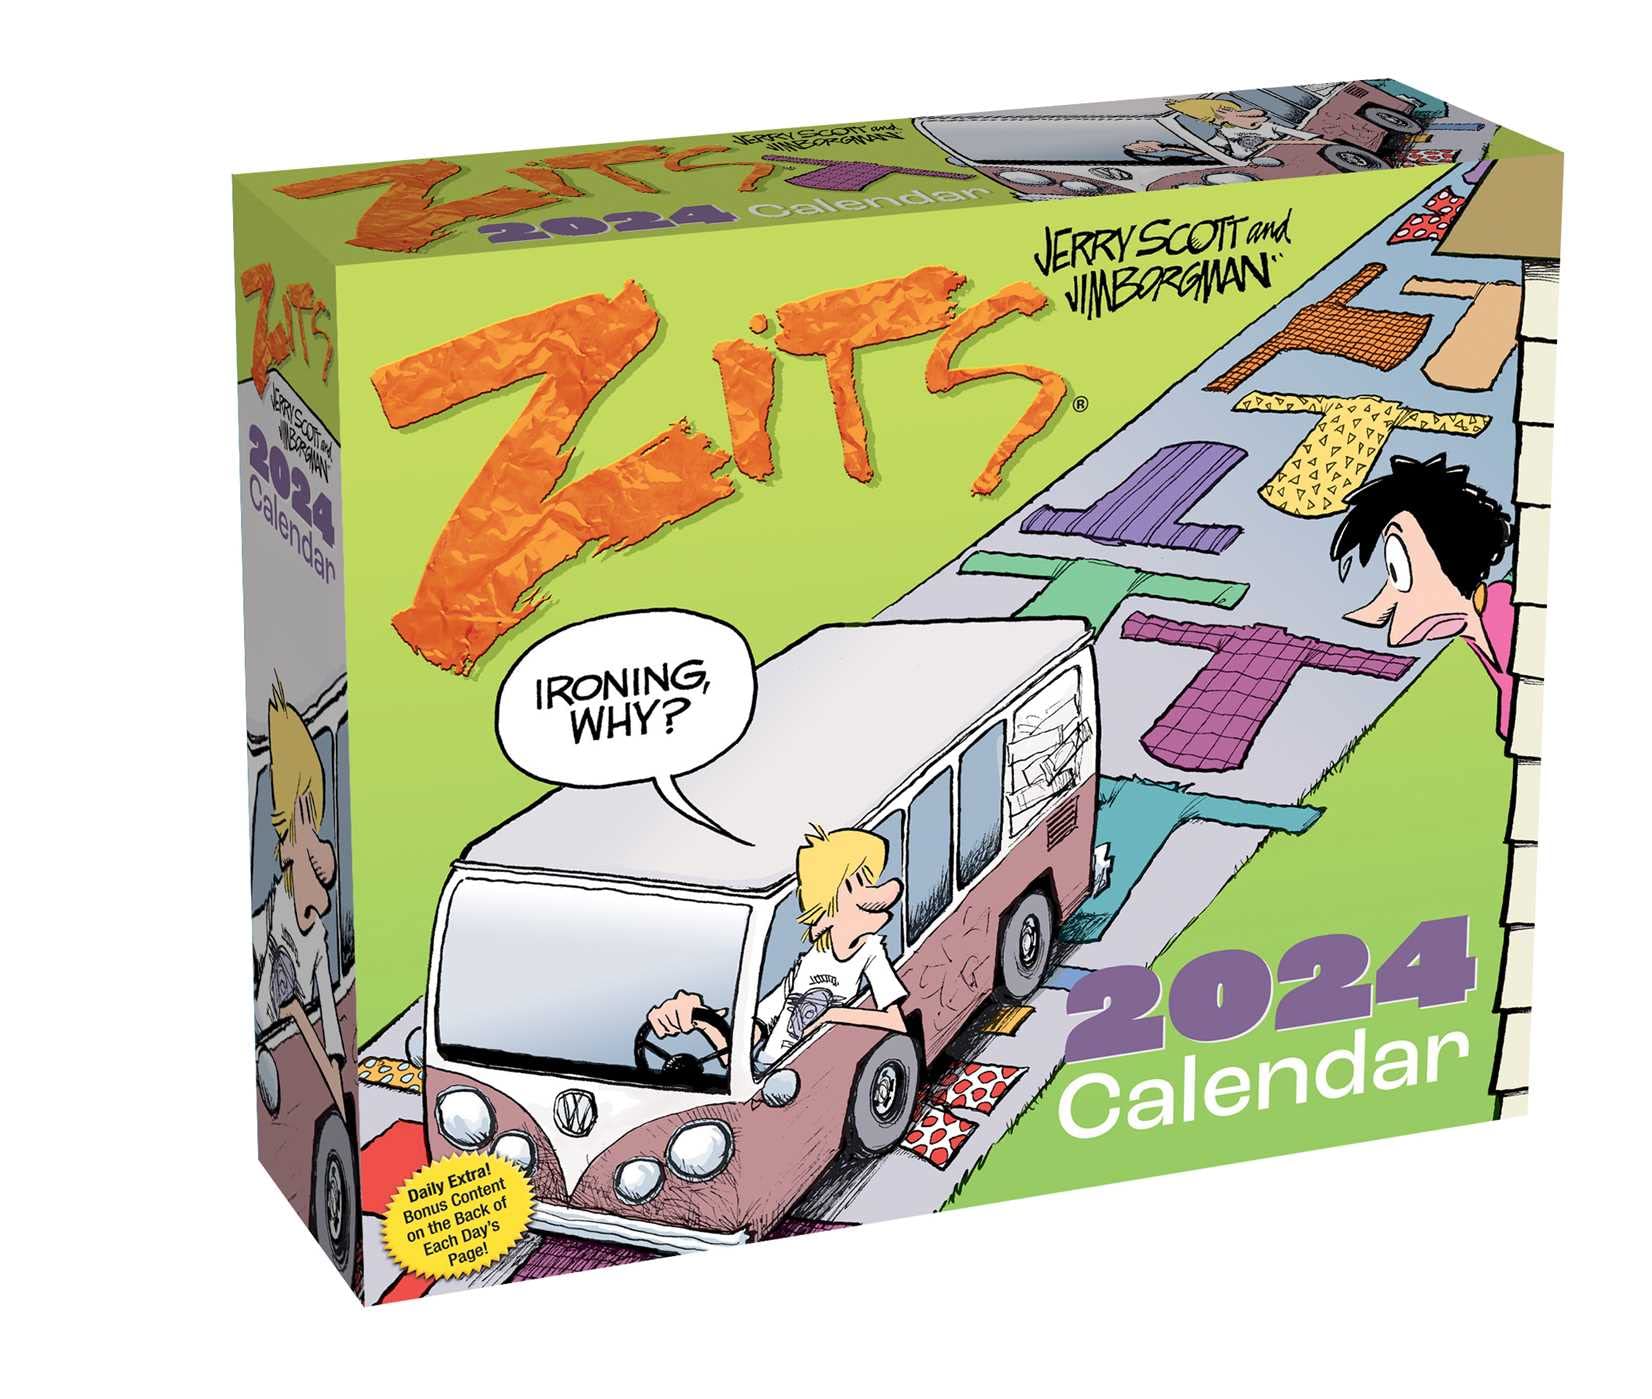 Complete List of Zits Comics Books